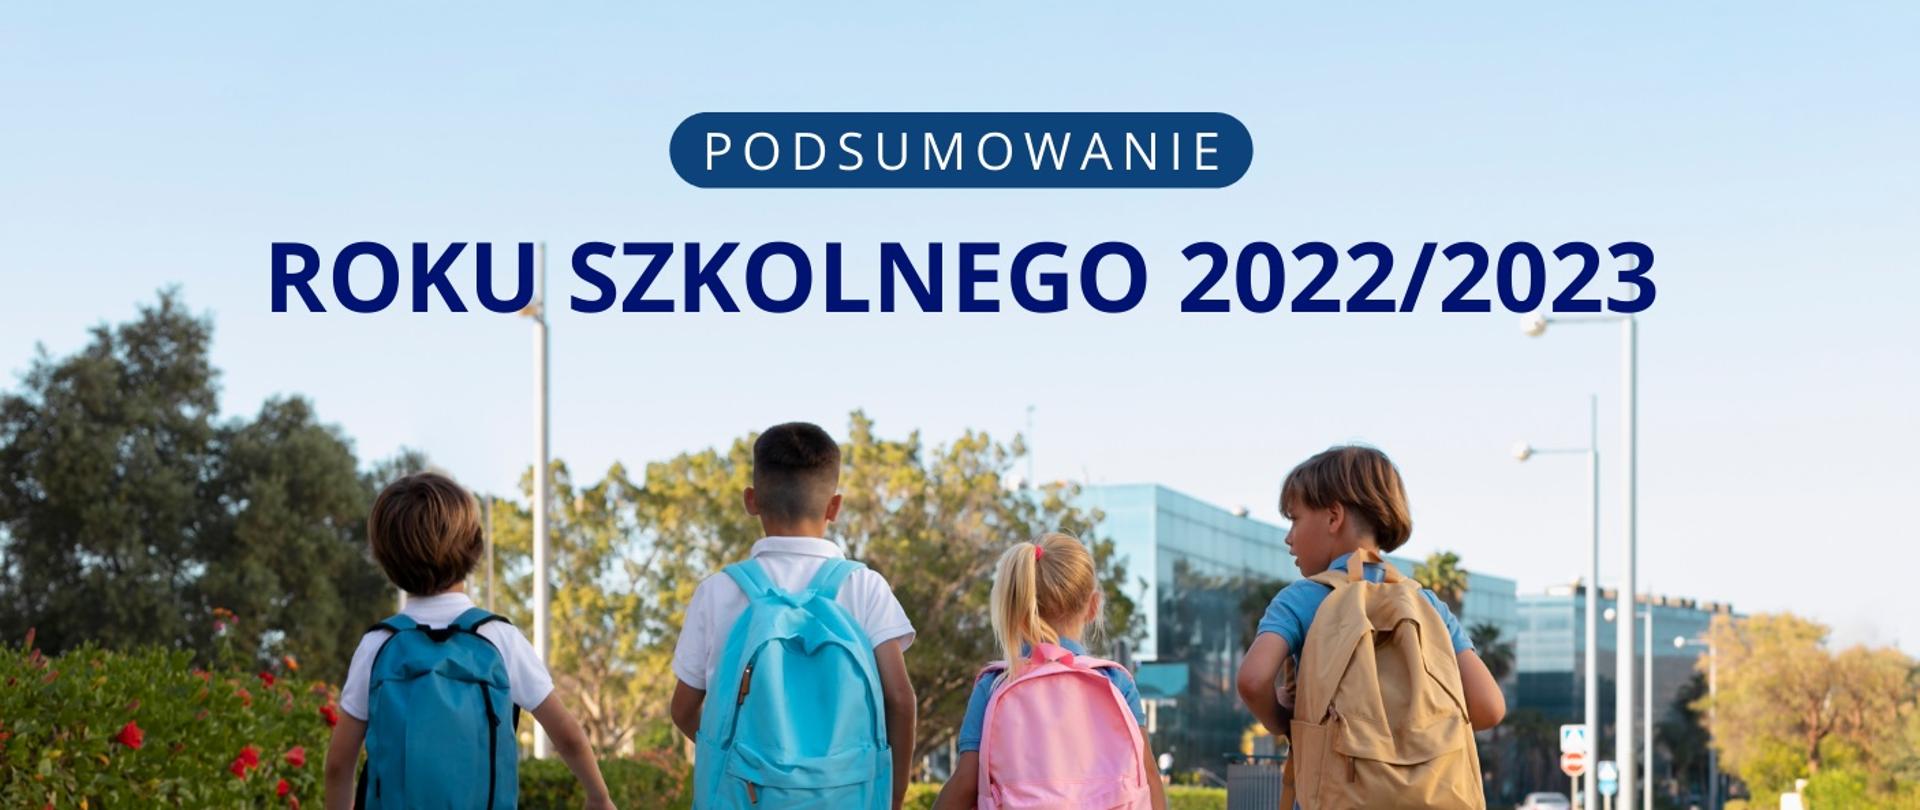 Czworo dzieci z tornistrami idzie drogą, nad nimi napis Podsumowanie roku szkolnego 2022/2023.